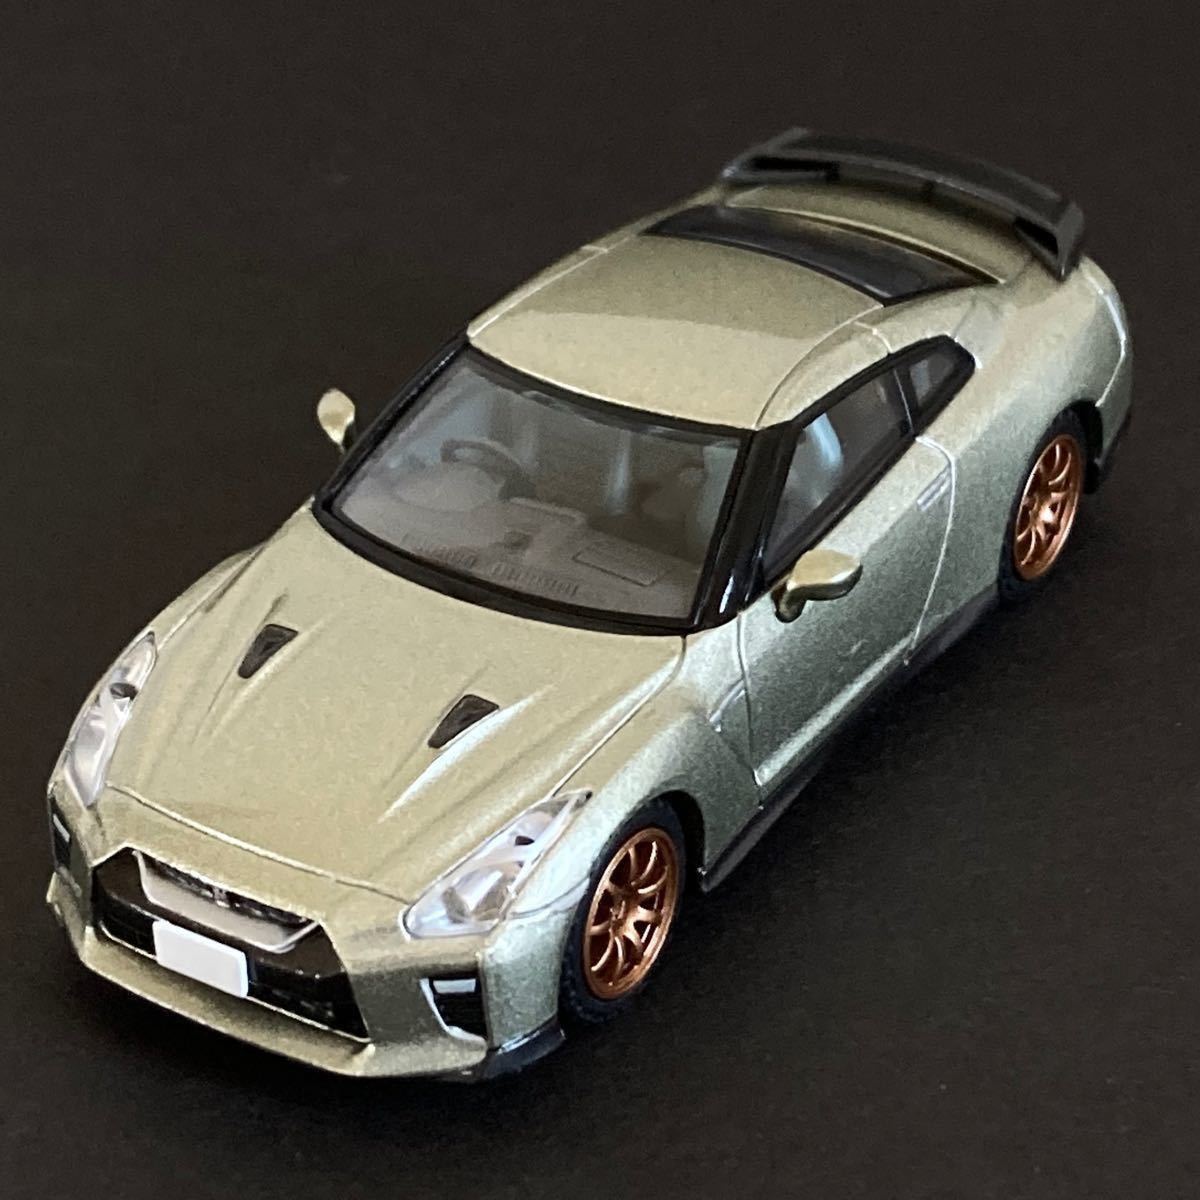 日産 GT-R Tスペック ミレニアムジェイド トミカリミテッドヴィンテージ ネオ